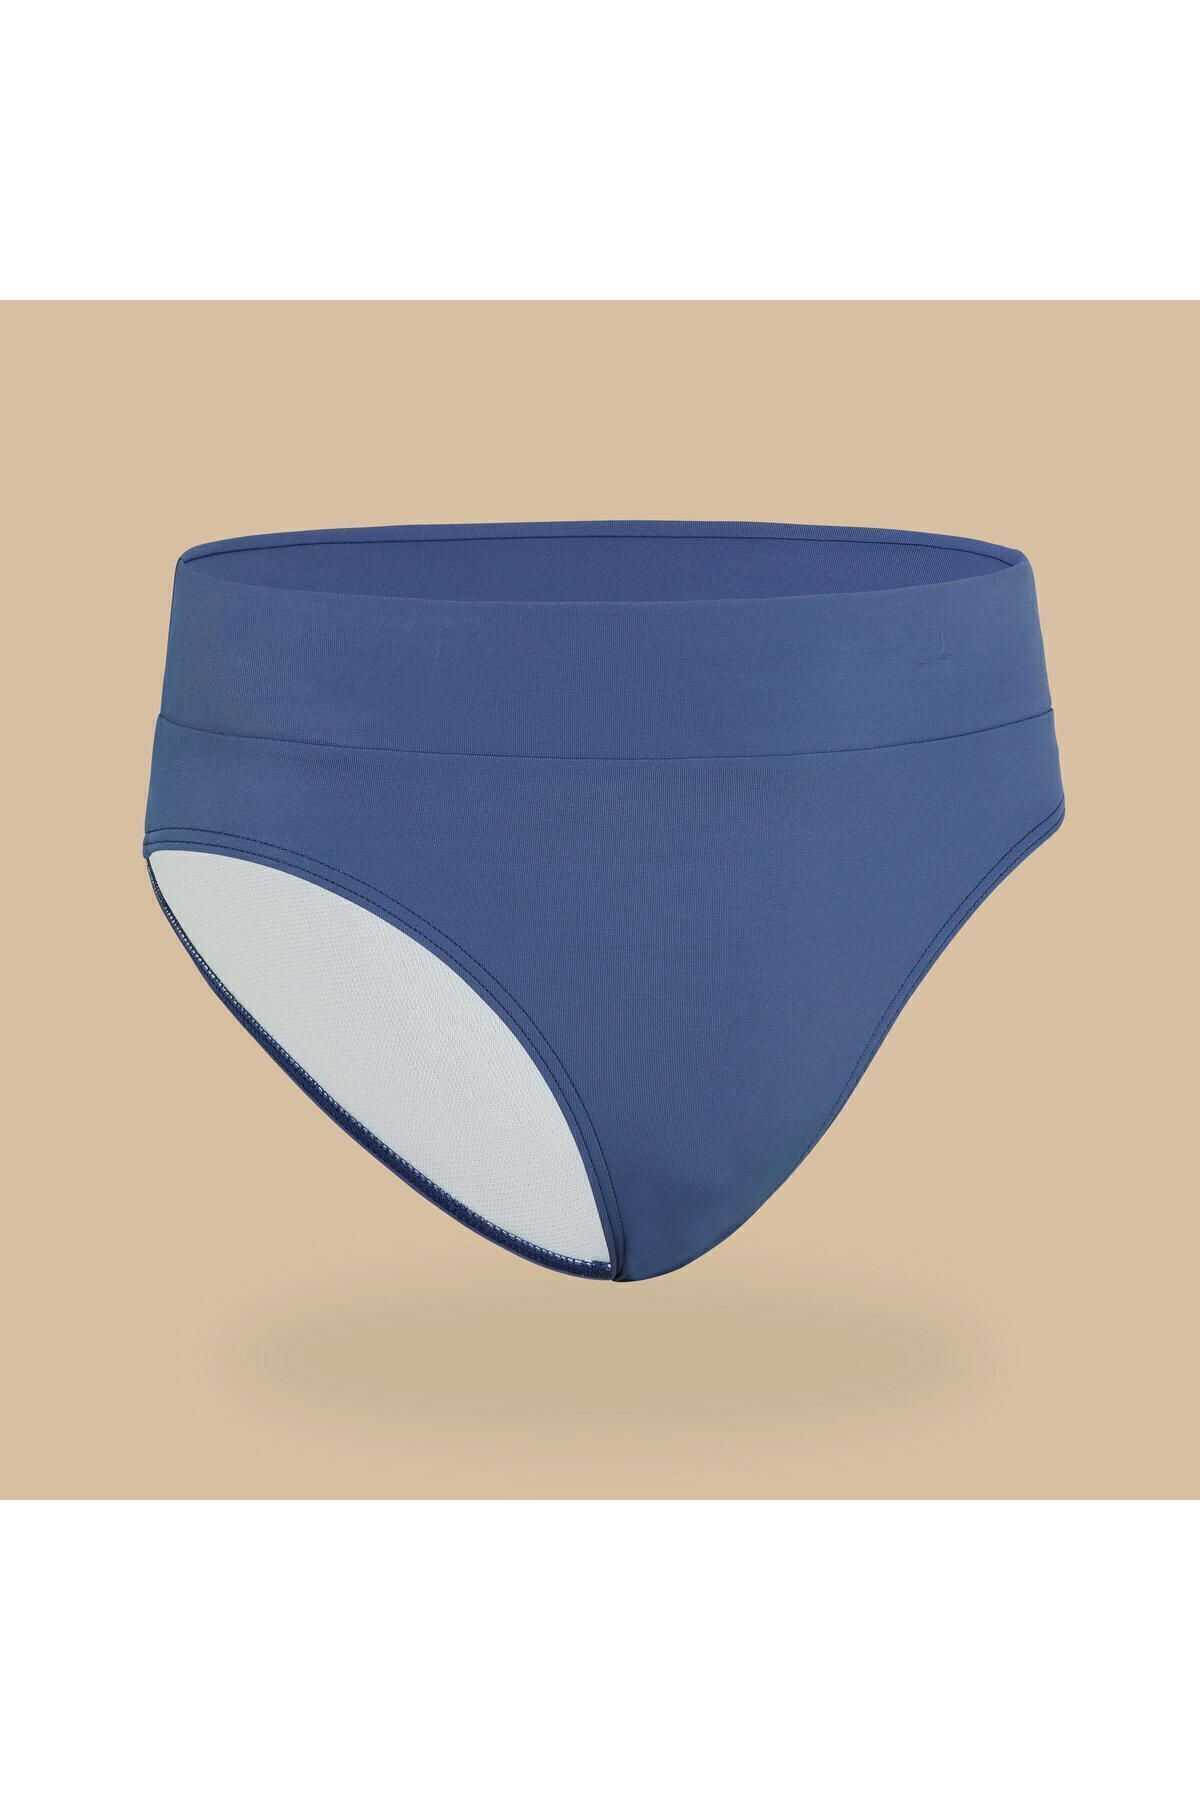 Decathlon Çocuk Bikini Altı - Mavi - Bao 500 Beden: 160-166cm 14-15 YAŞ 341066